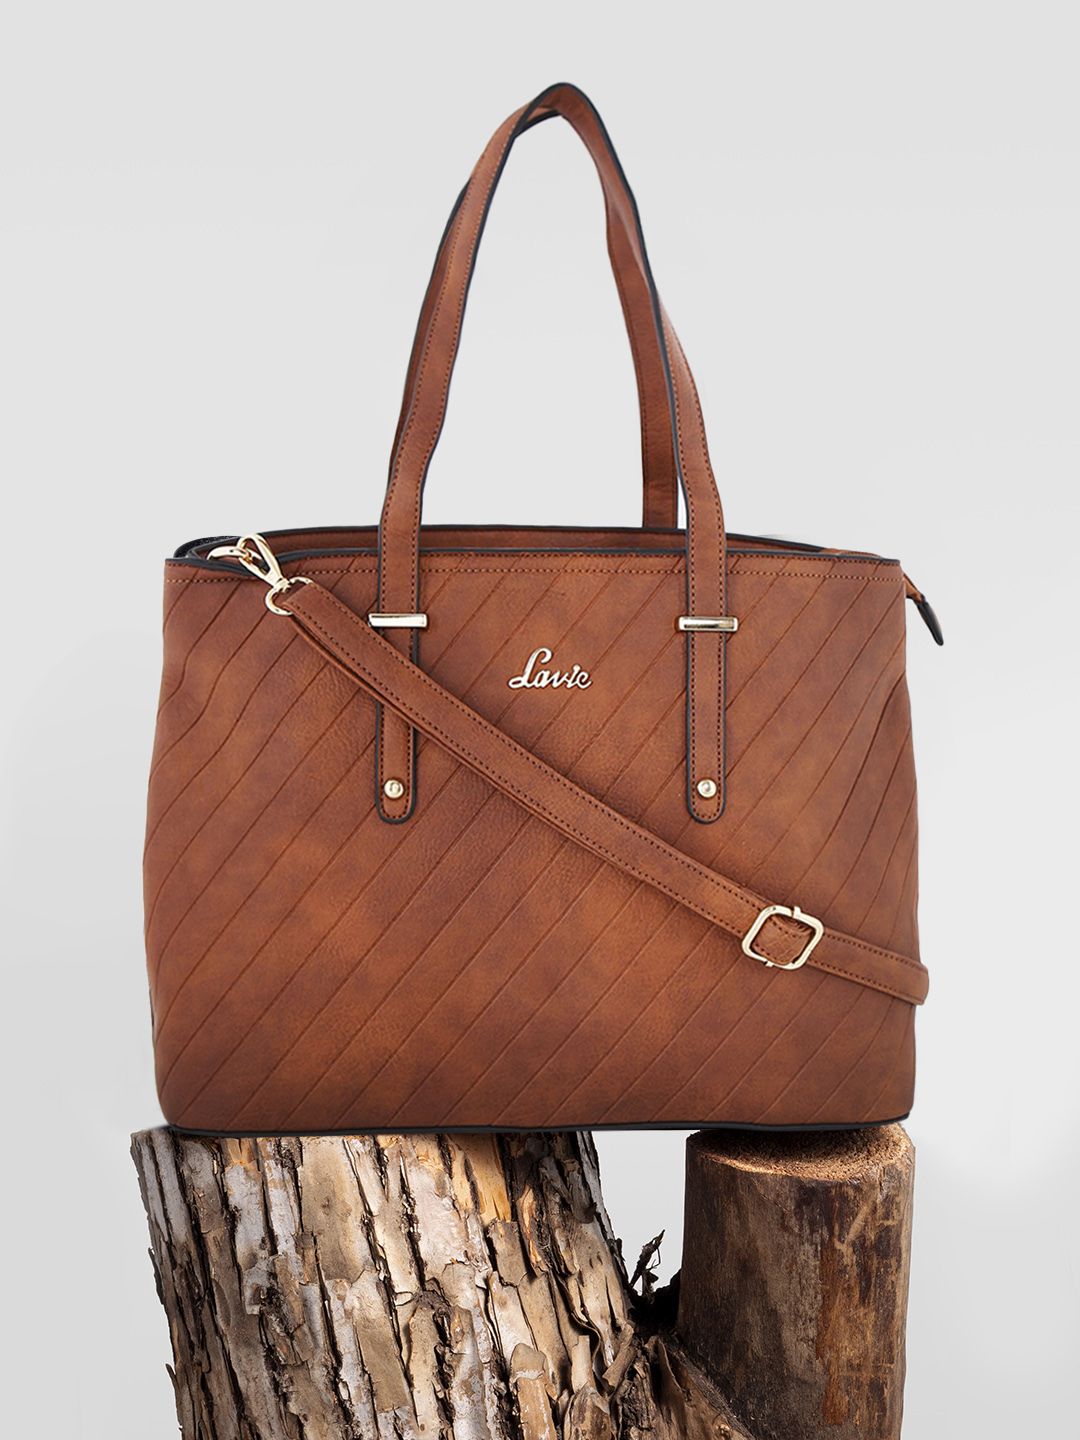 Lavie Brown Self Design Shoulder Bag Price in India